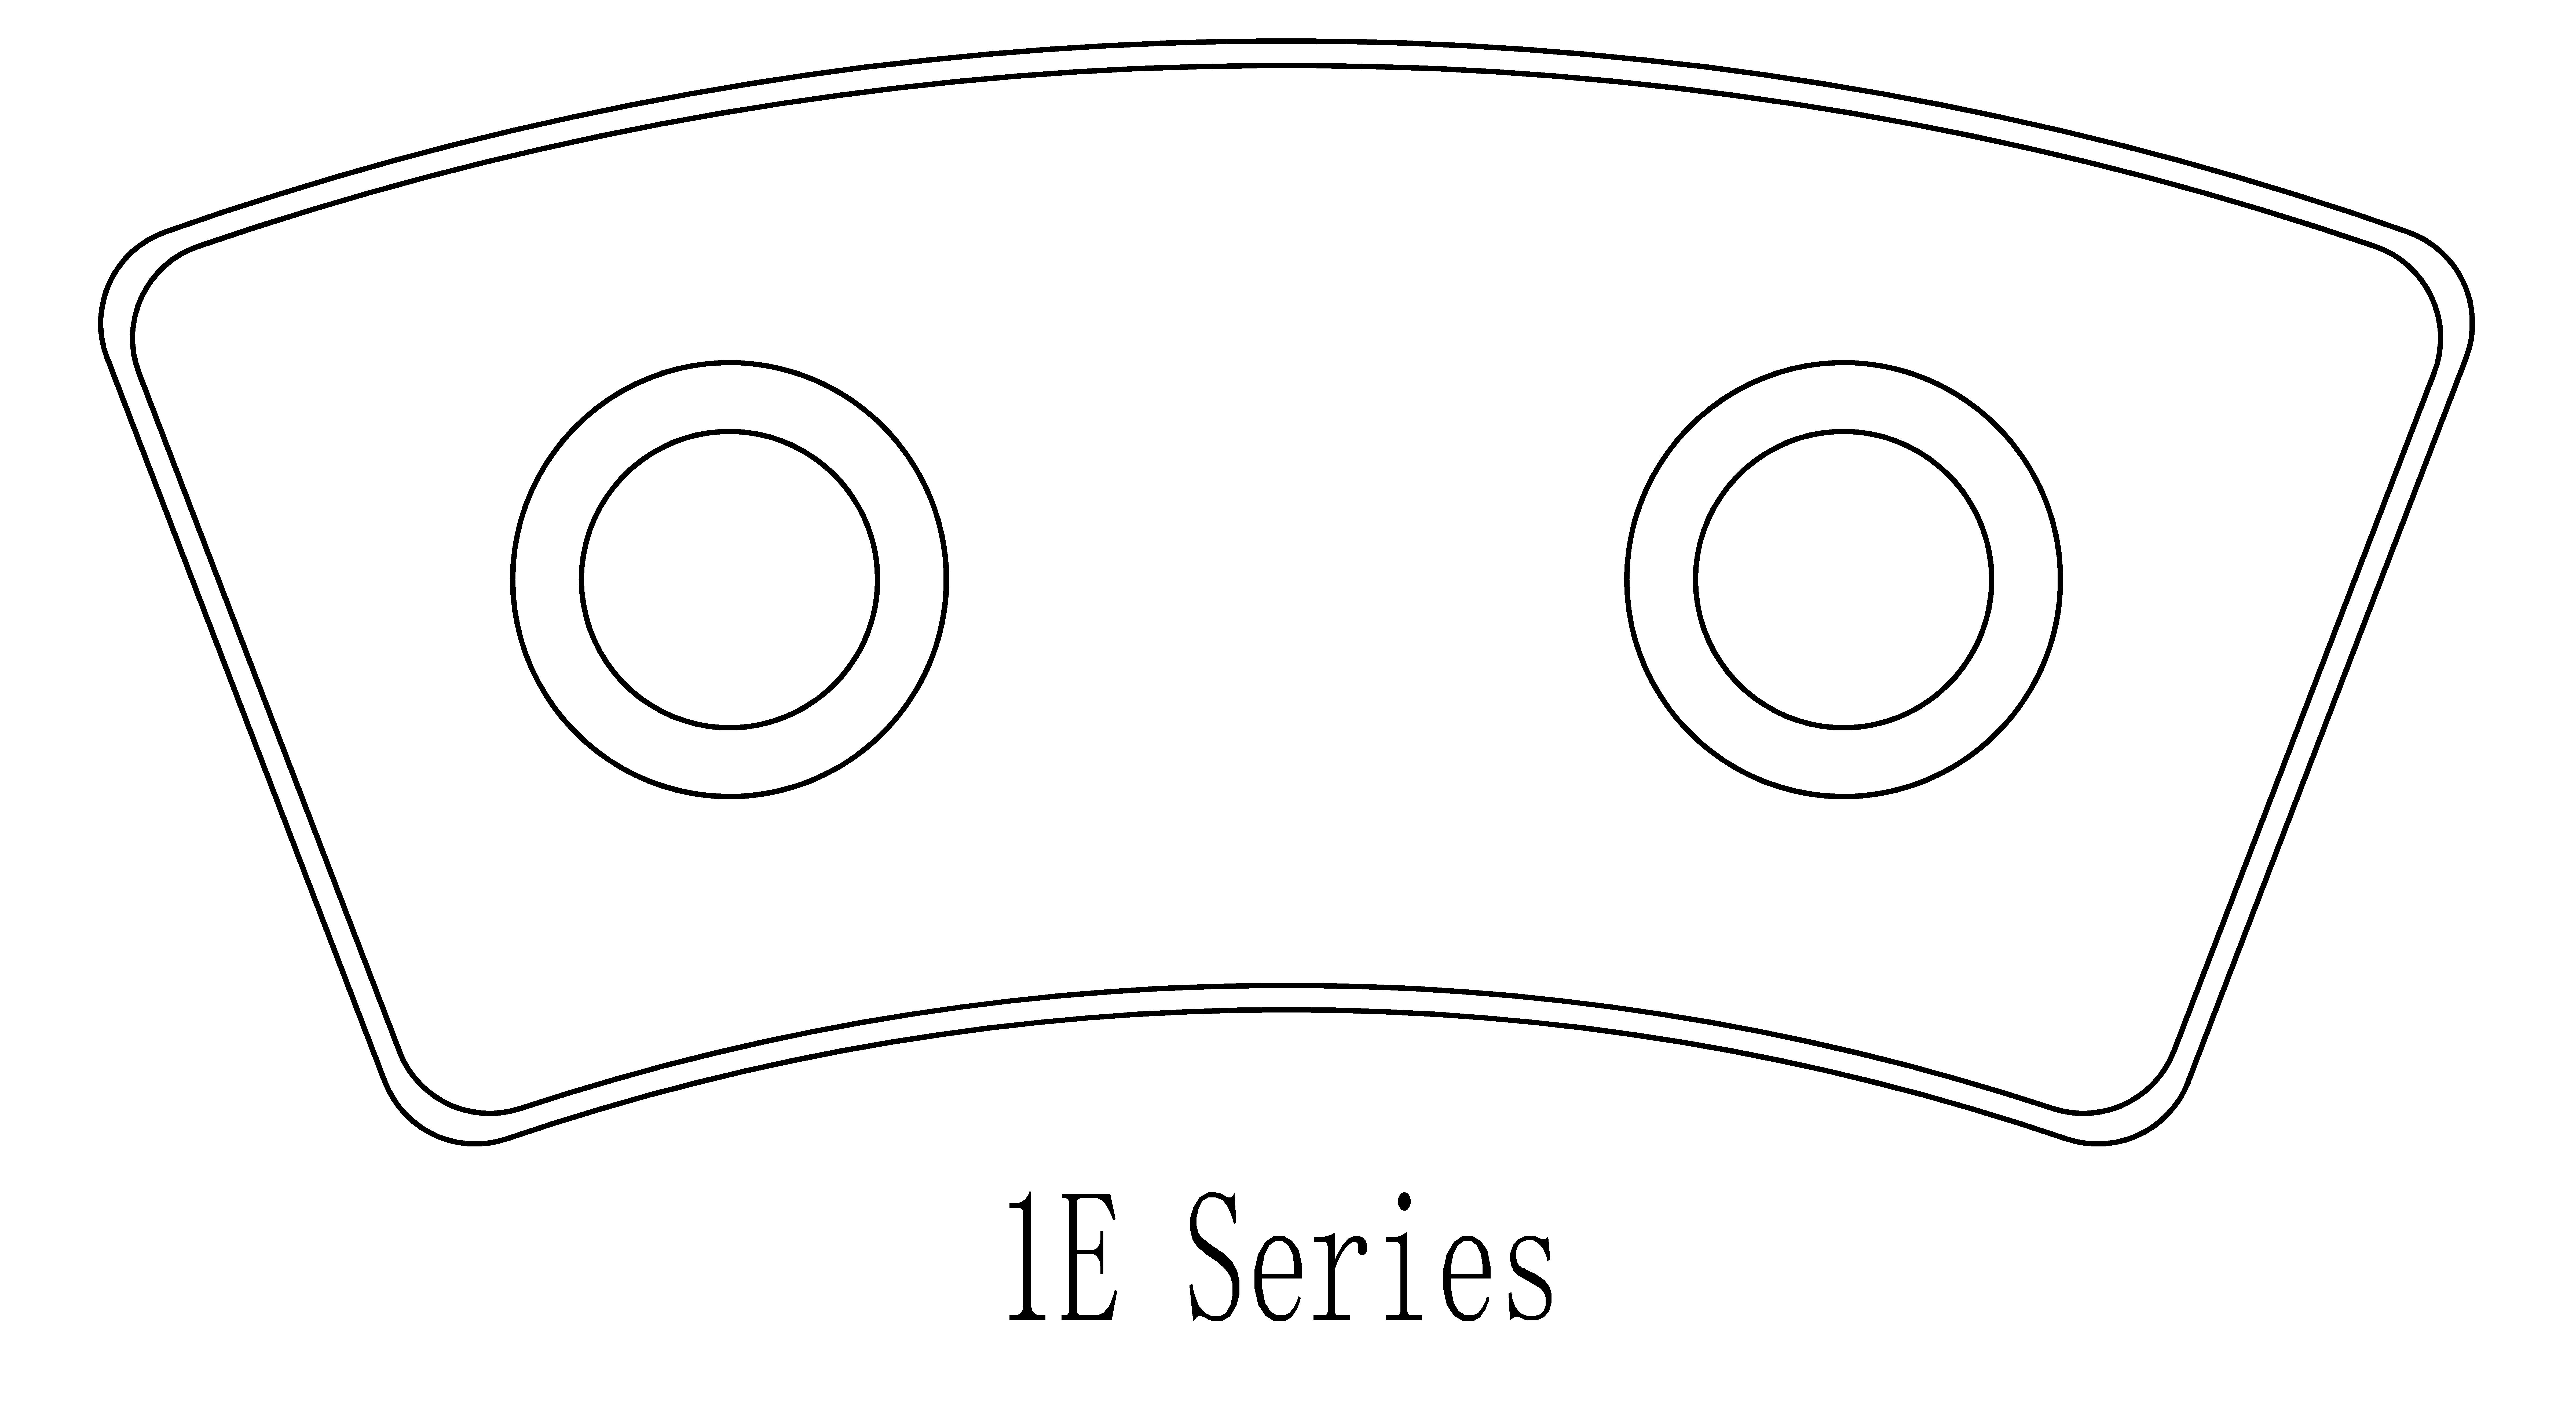 1E Series